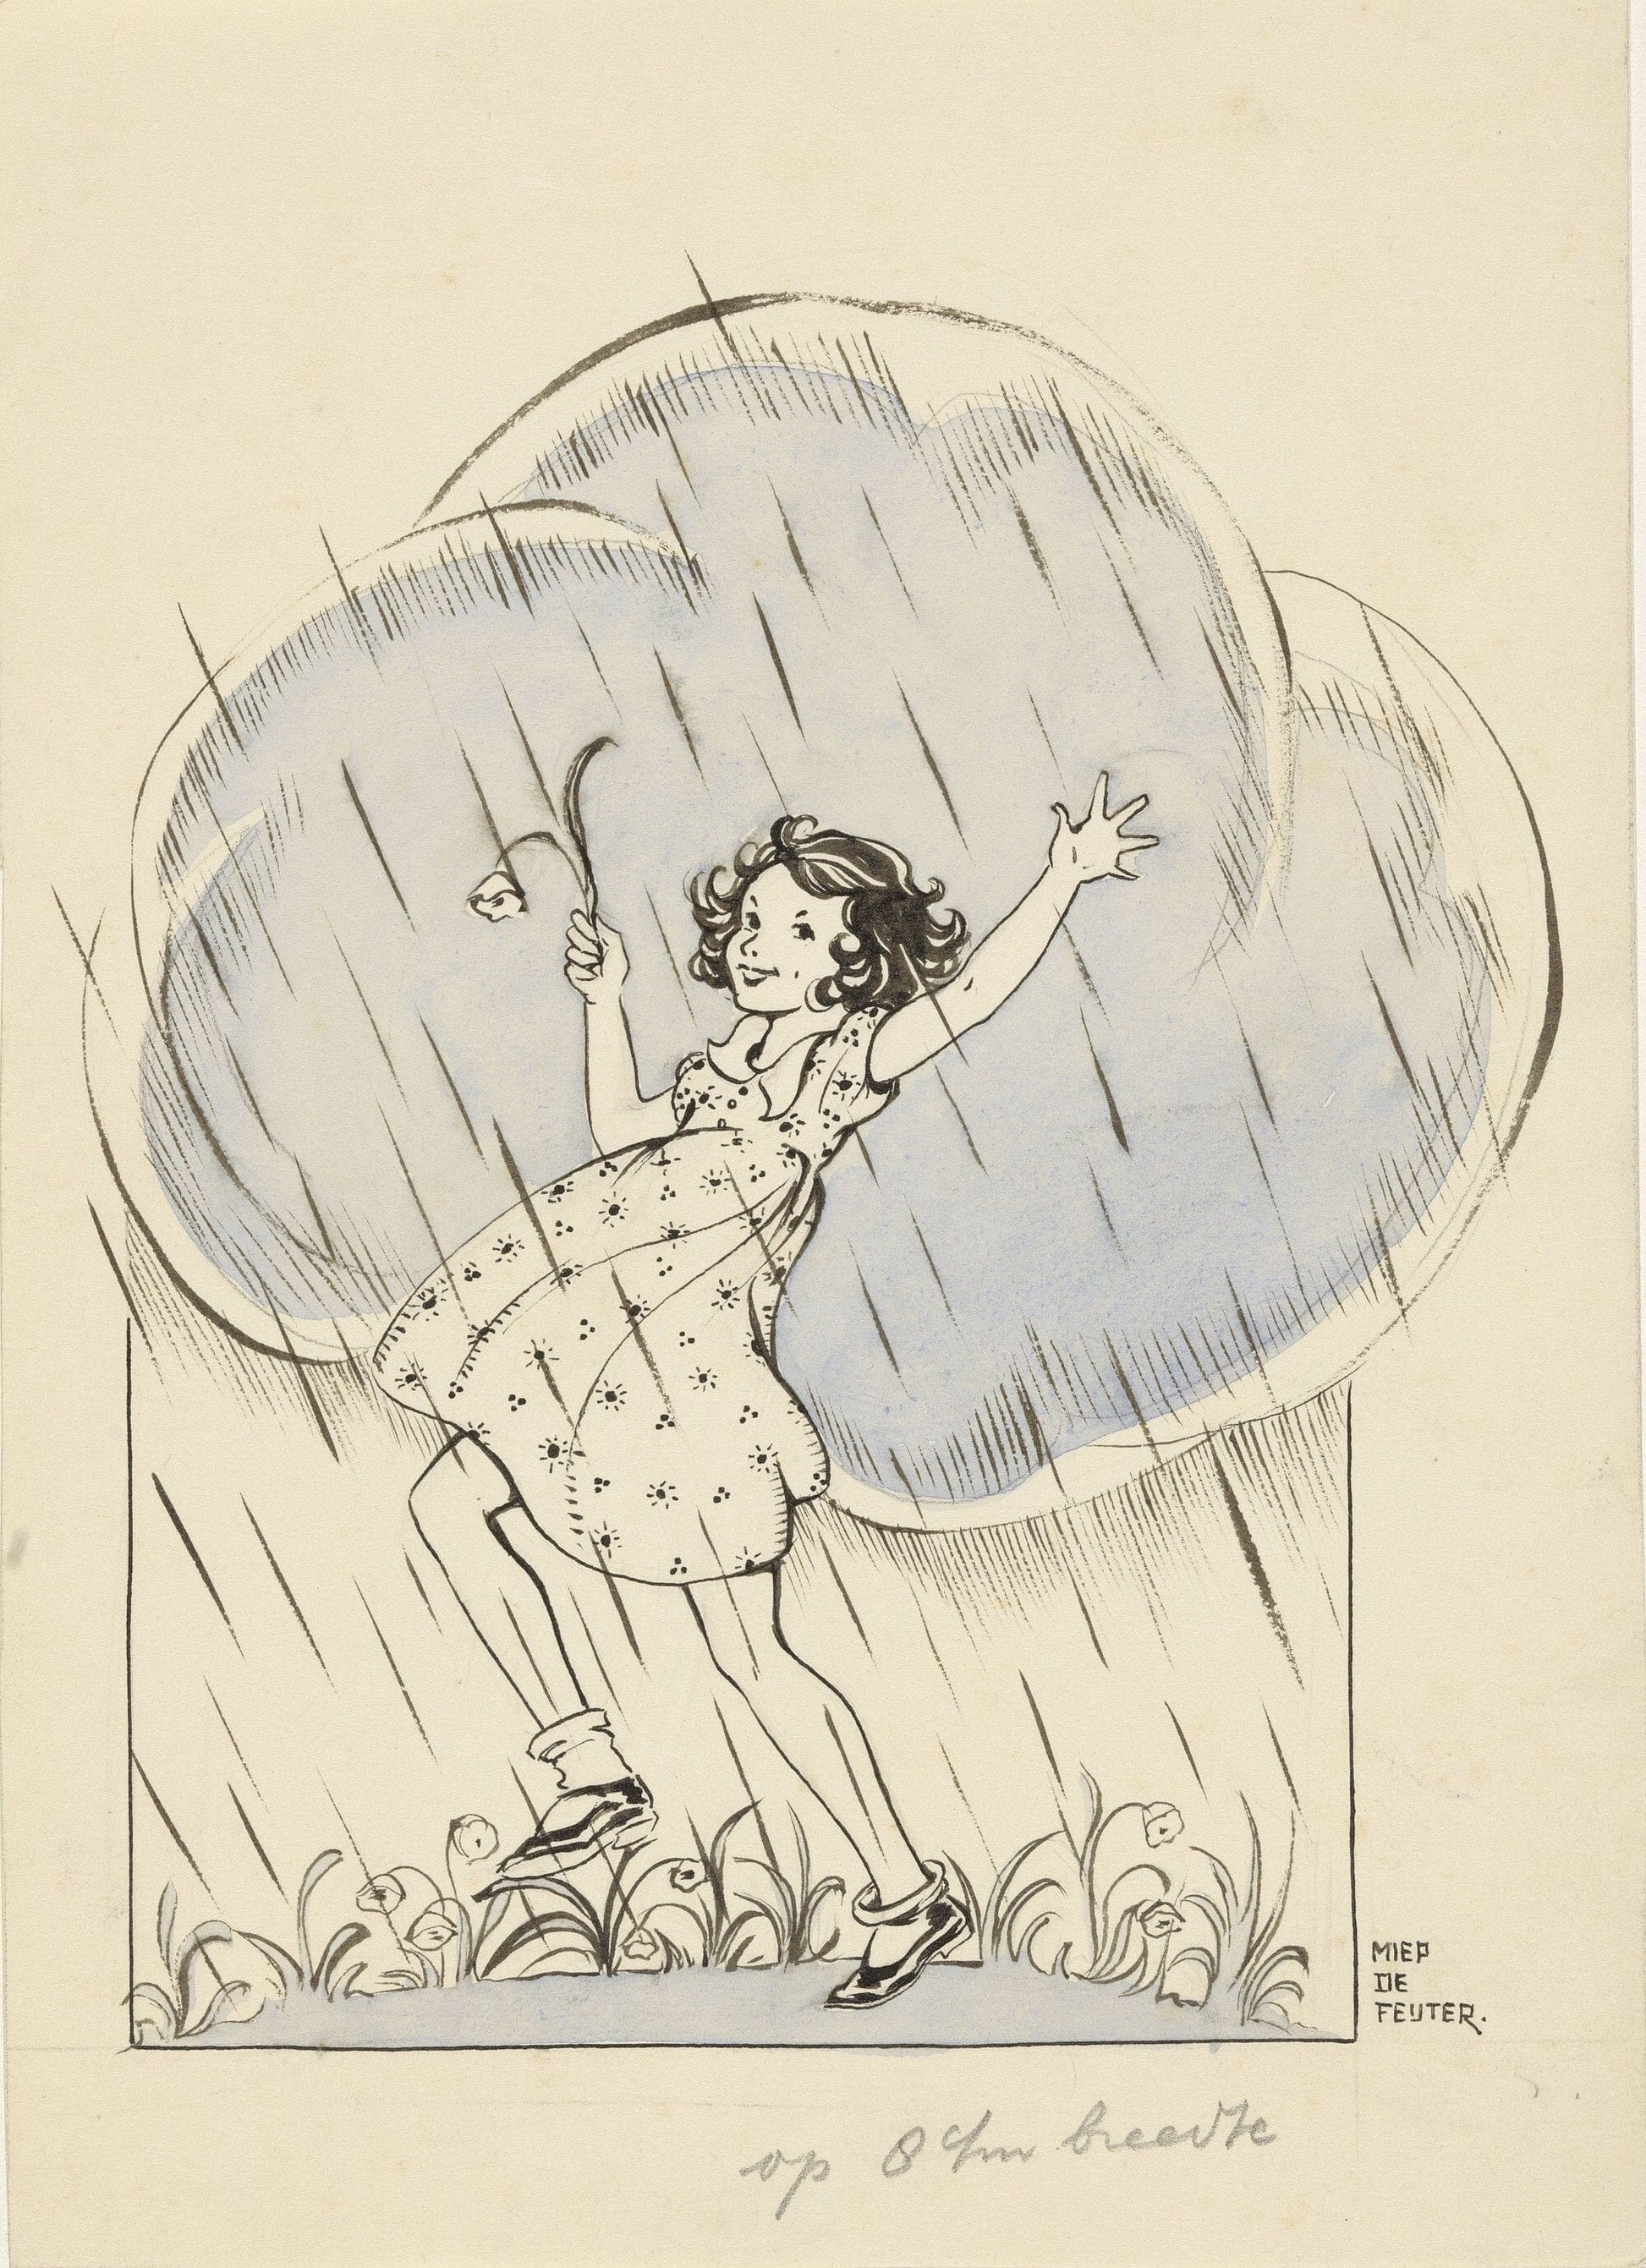 Dancing in the rain (1930s) | Bathroom prints | Miep de Feijter Posters, Prints, & Visual Artwork The Trumpet Shop   